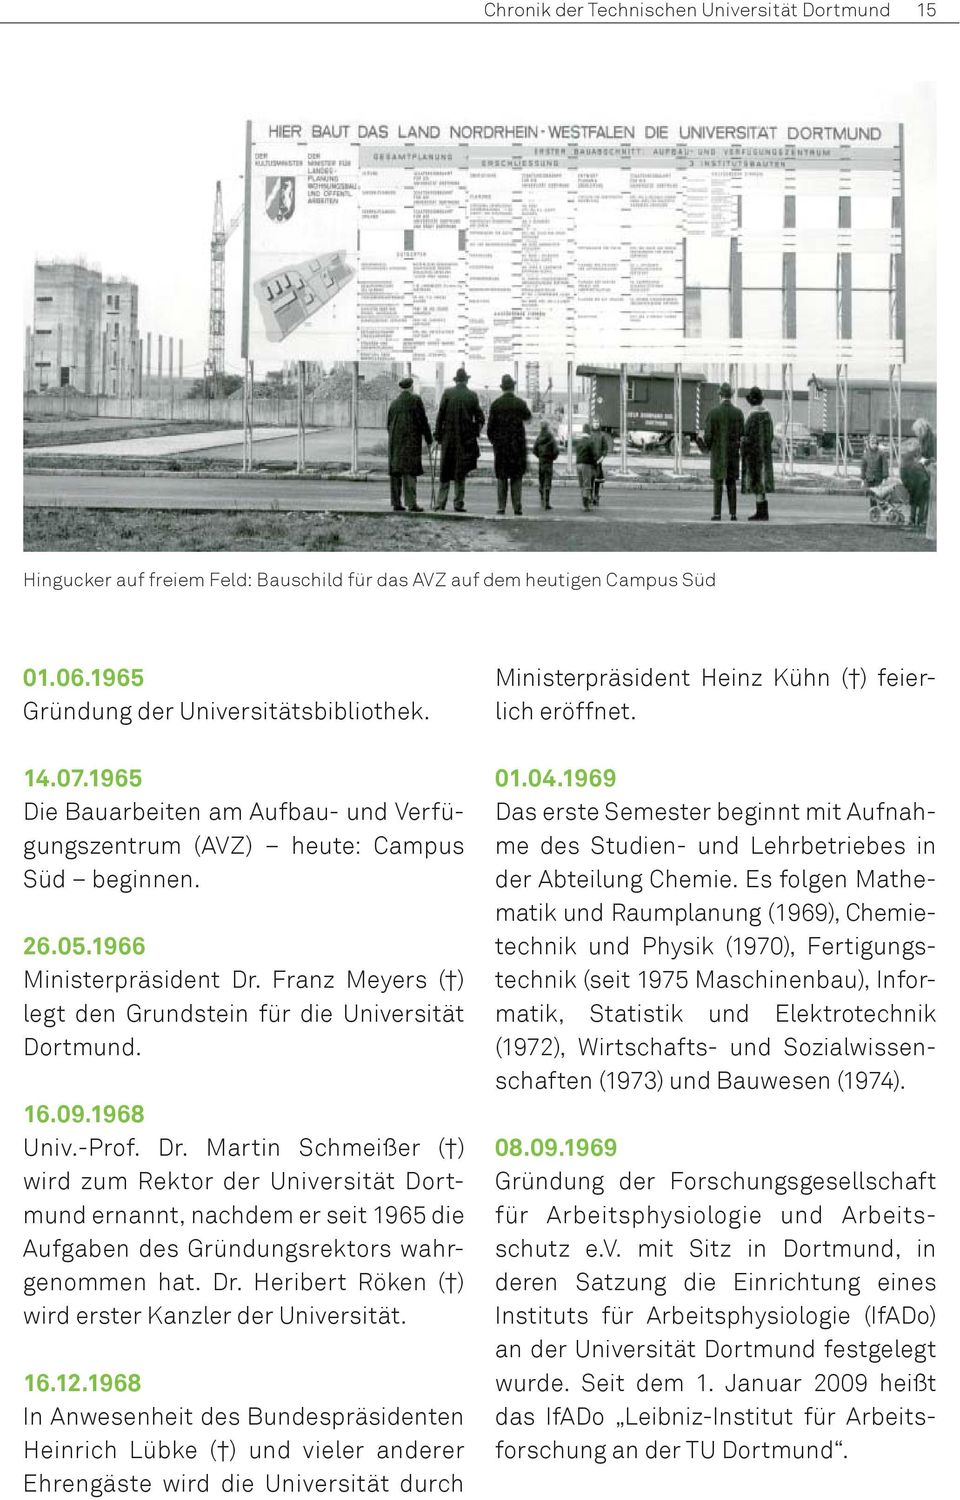 1968 Univ.-Prof. Dr. Martin Schmeißer ( ) wird zum Rek tor der Universität Dortmund ernannt, nachdem er seit 1965 die Auf gaben des Gründungsrektors wahrgenommen hat. Dr. Heribert Röken ( ) wird erster Kanzler der Universität.